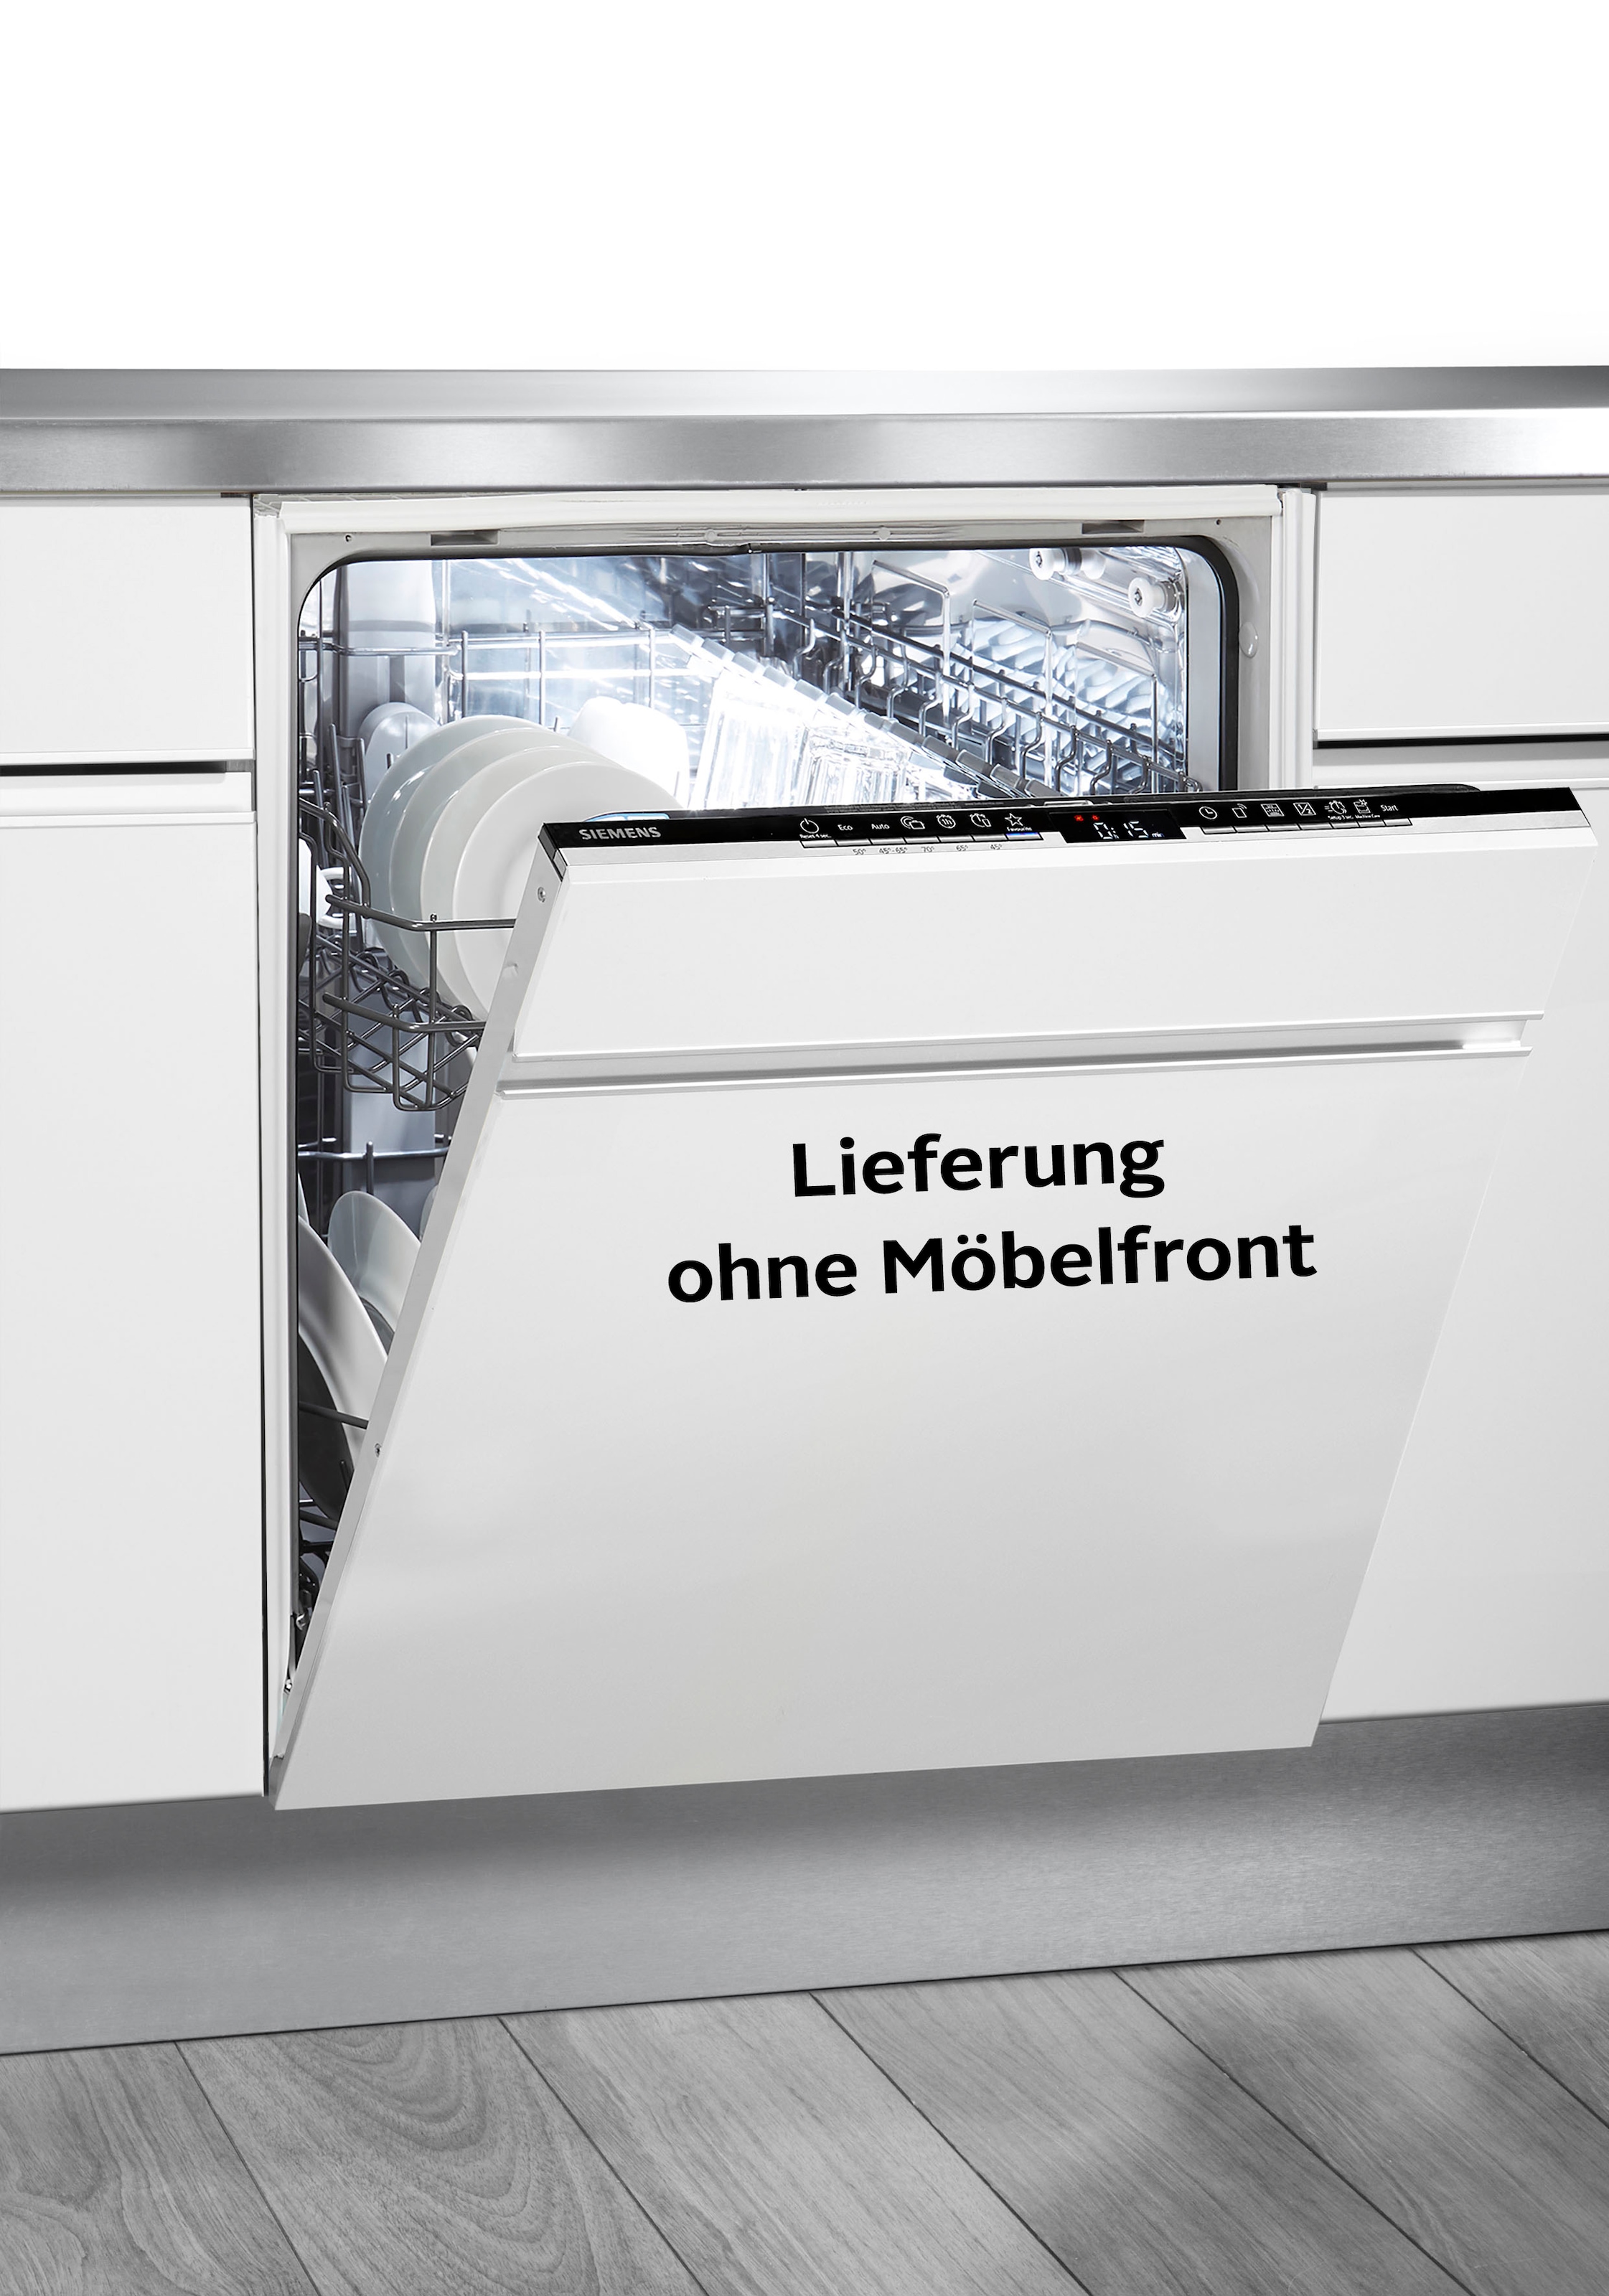 Siemens Geschirrspüler mit XXL Garantie Jahren 3